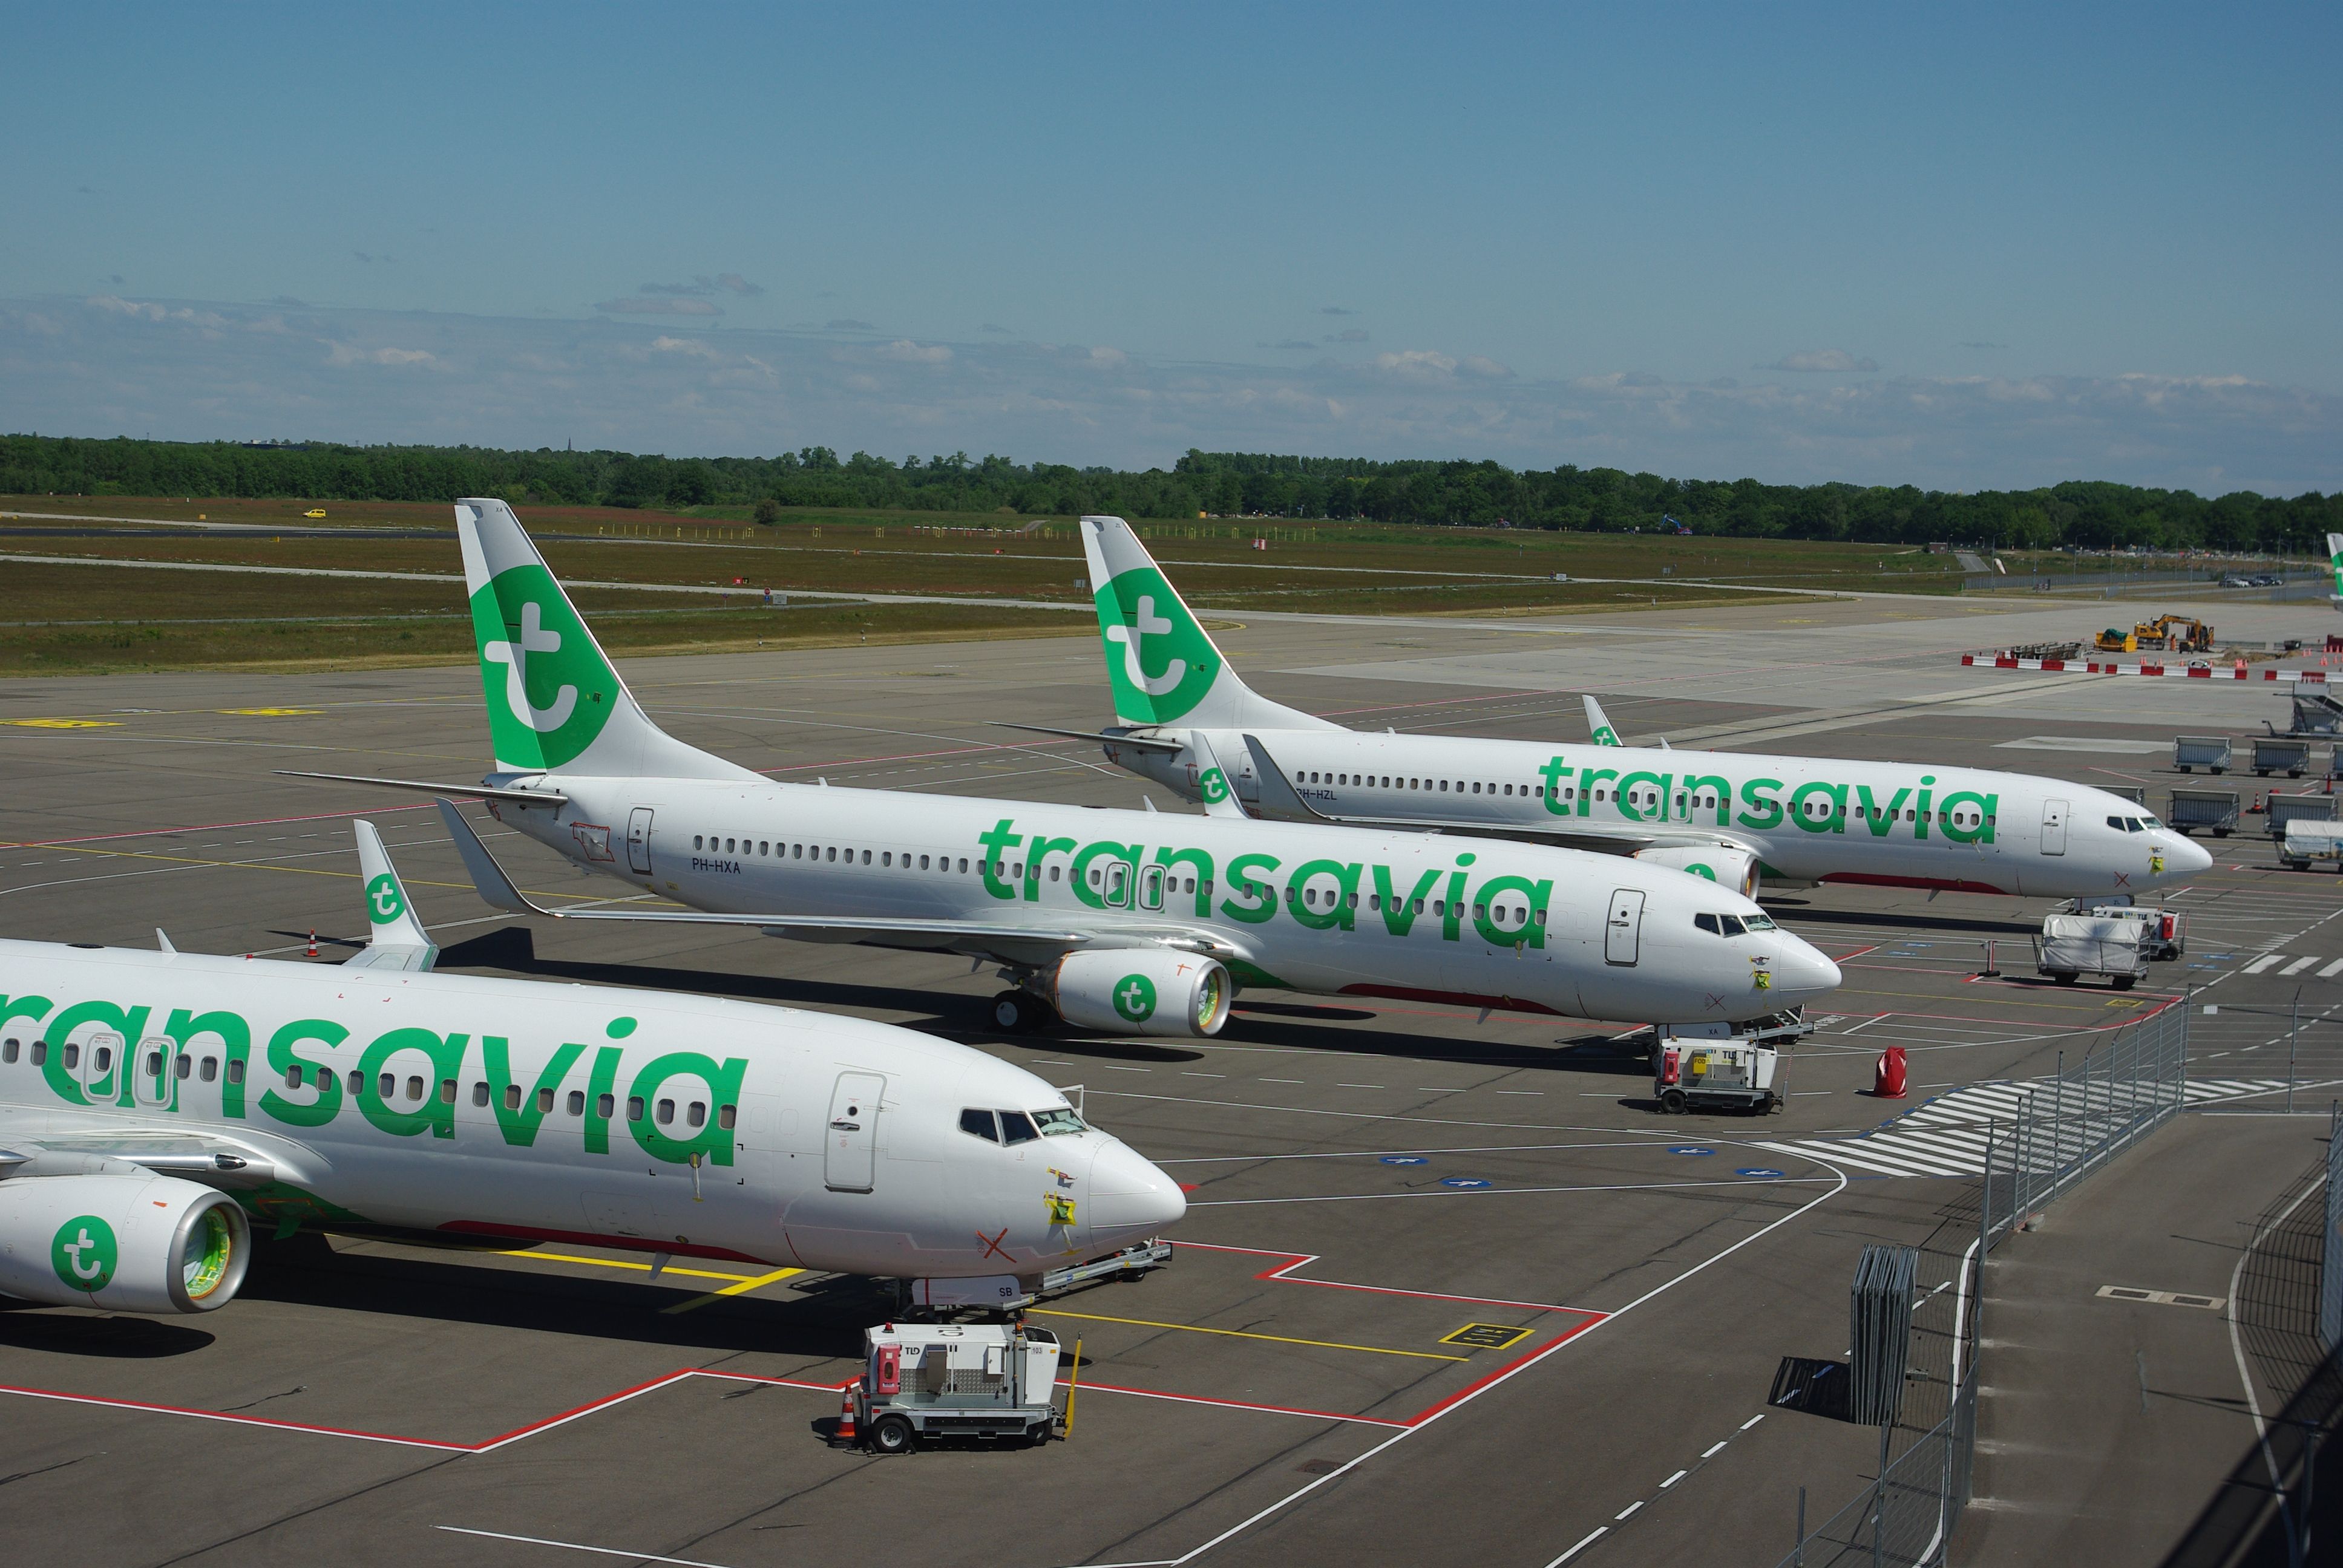 Transavia aircraft lined up